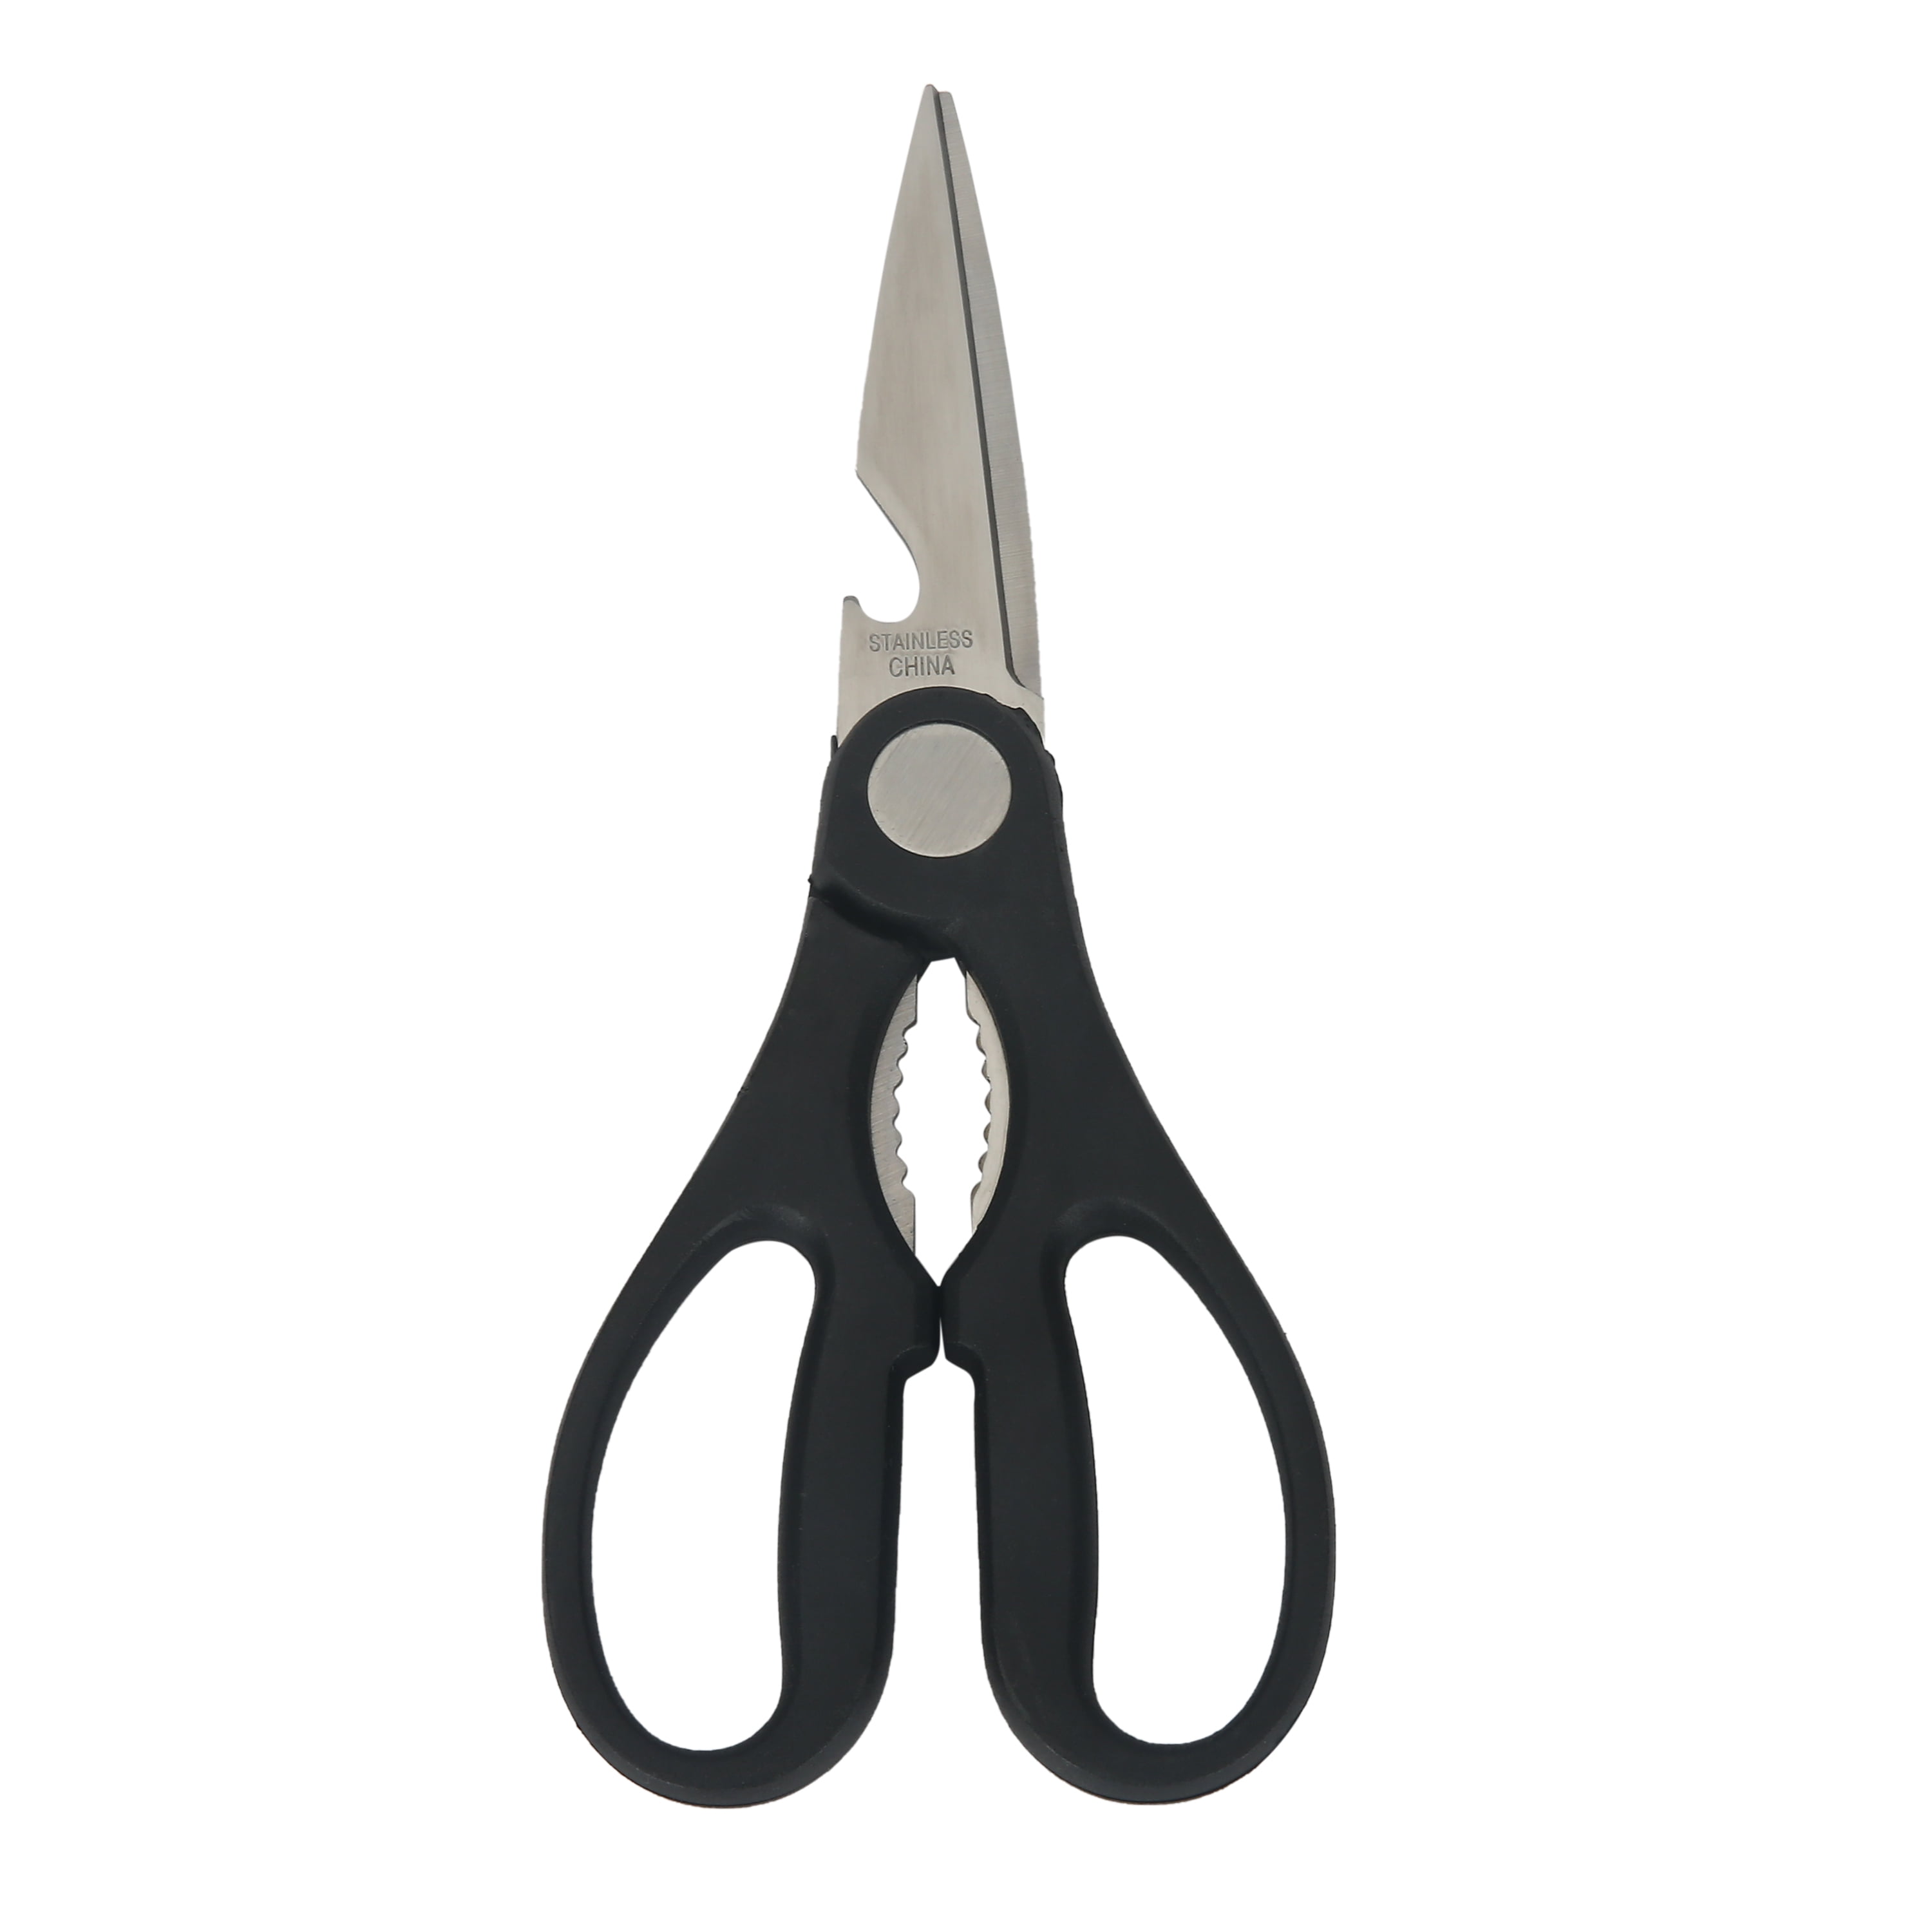 Green Bell Utility Kitchen Scissors G-2033 (Black) Longer Blade